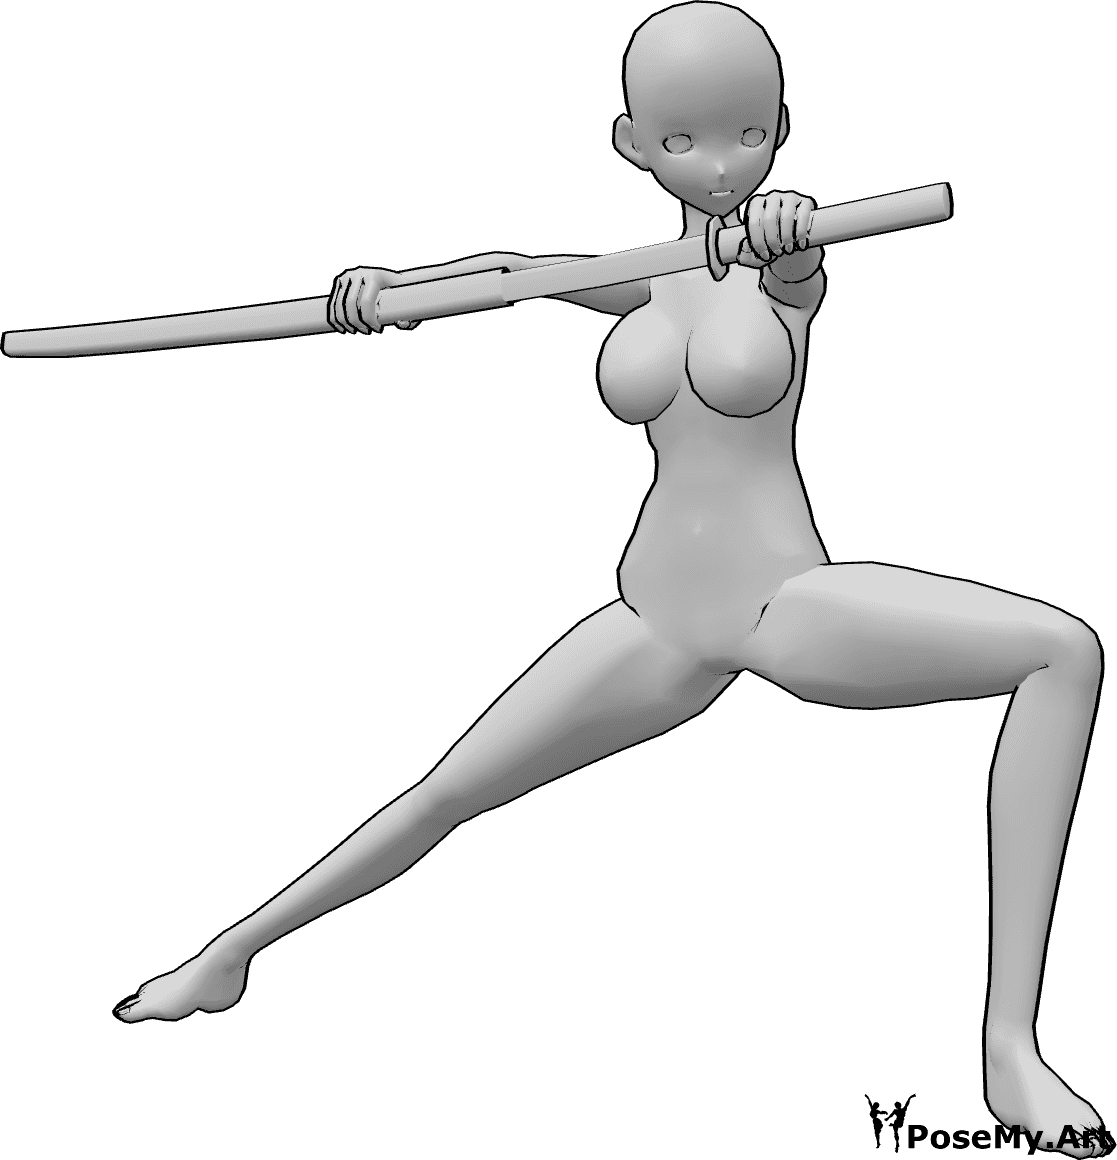 Referencia de poses- Anime femenino katana pose - La mujer anime está medio agachada, mirando a la izquierda y sacando lentamente su katana de la funda.